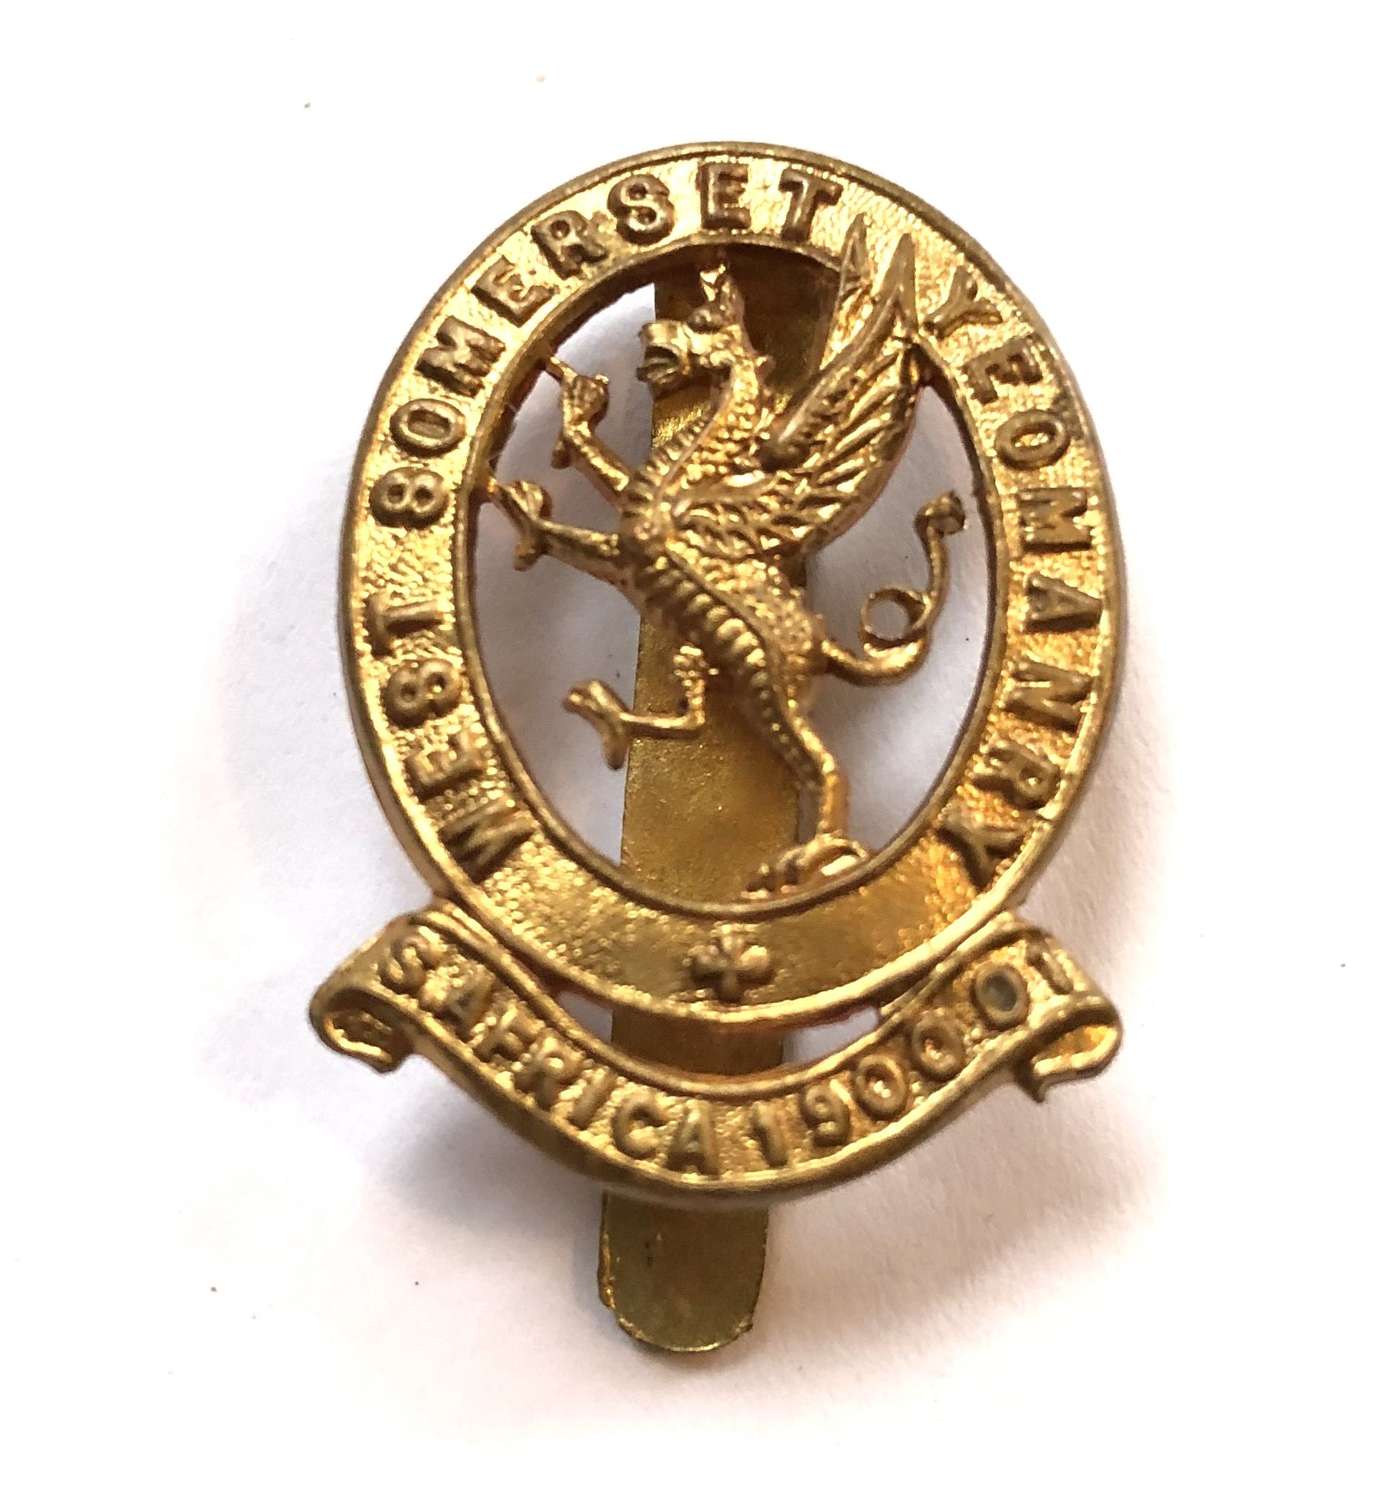 West Somerset Yeomanry cap badge c1908-20